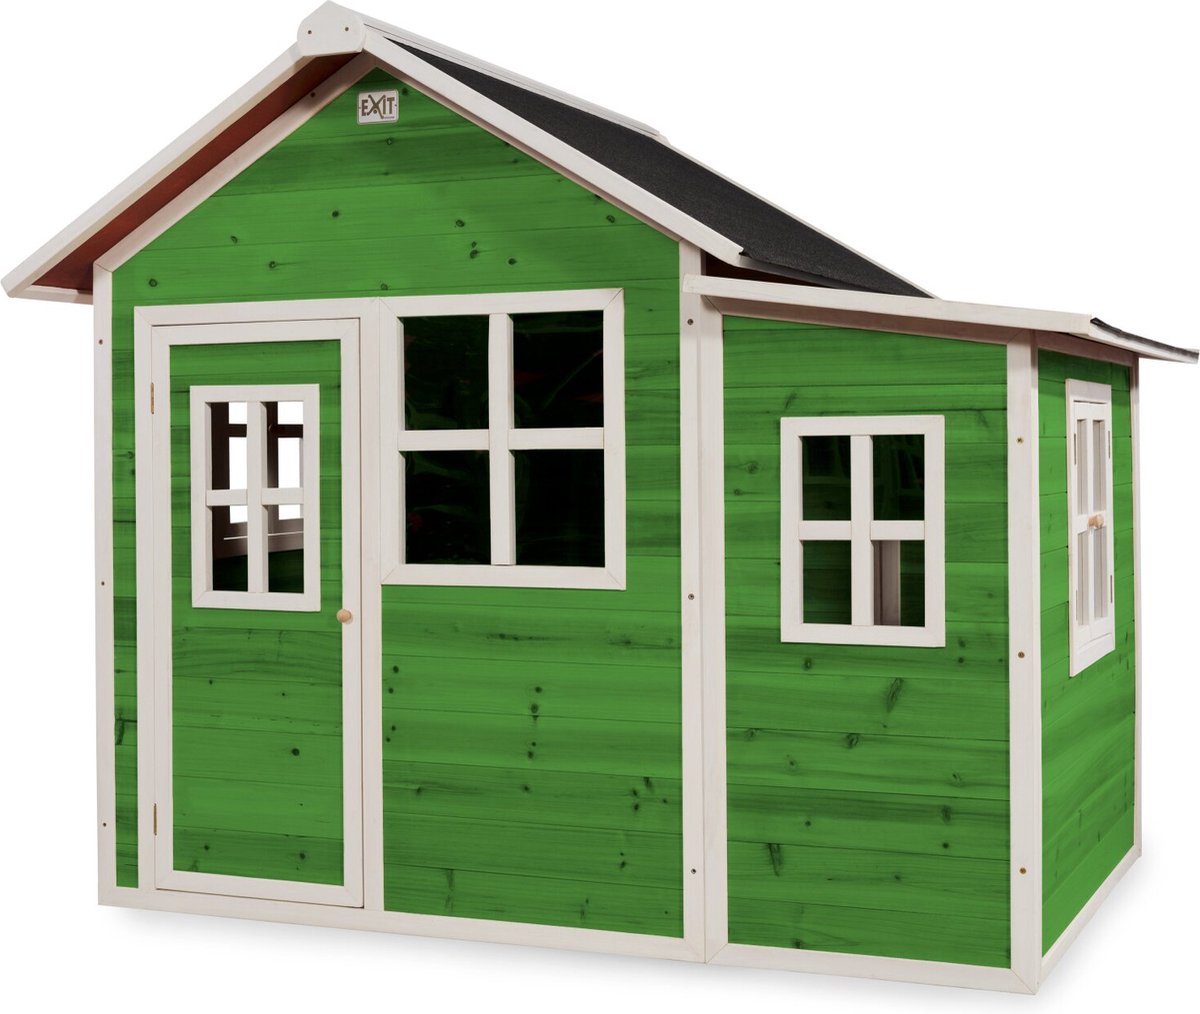 EXIT Loft 150 houten speelhuis - groen